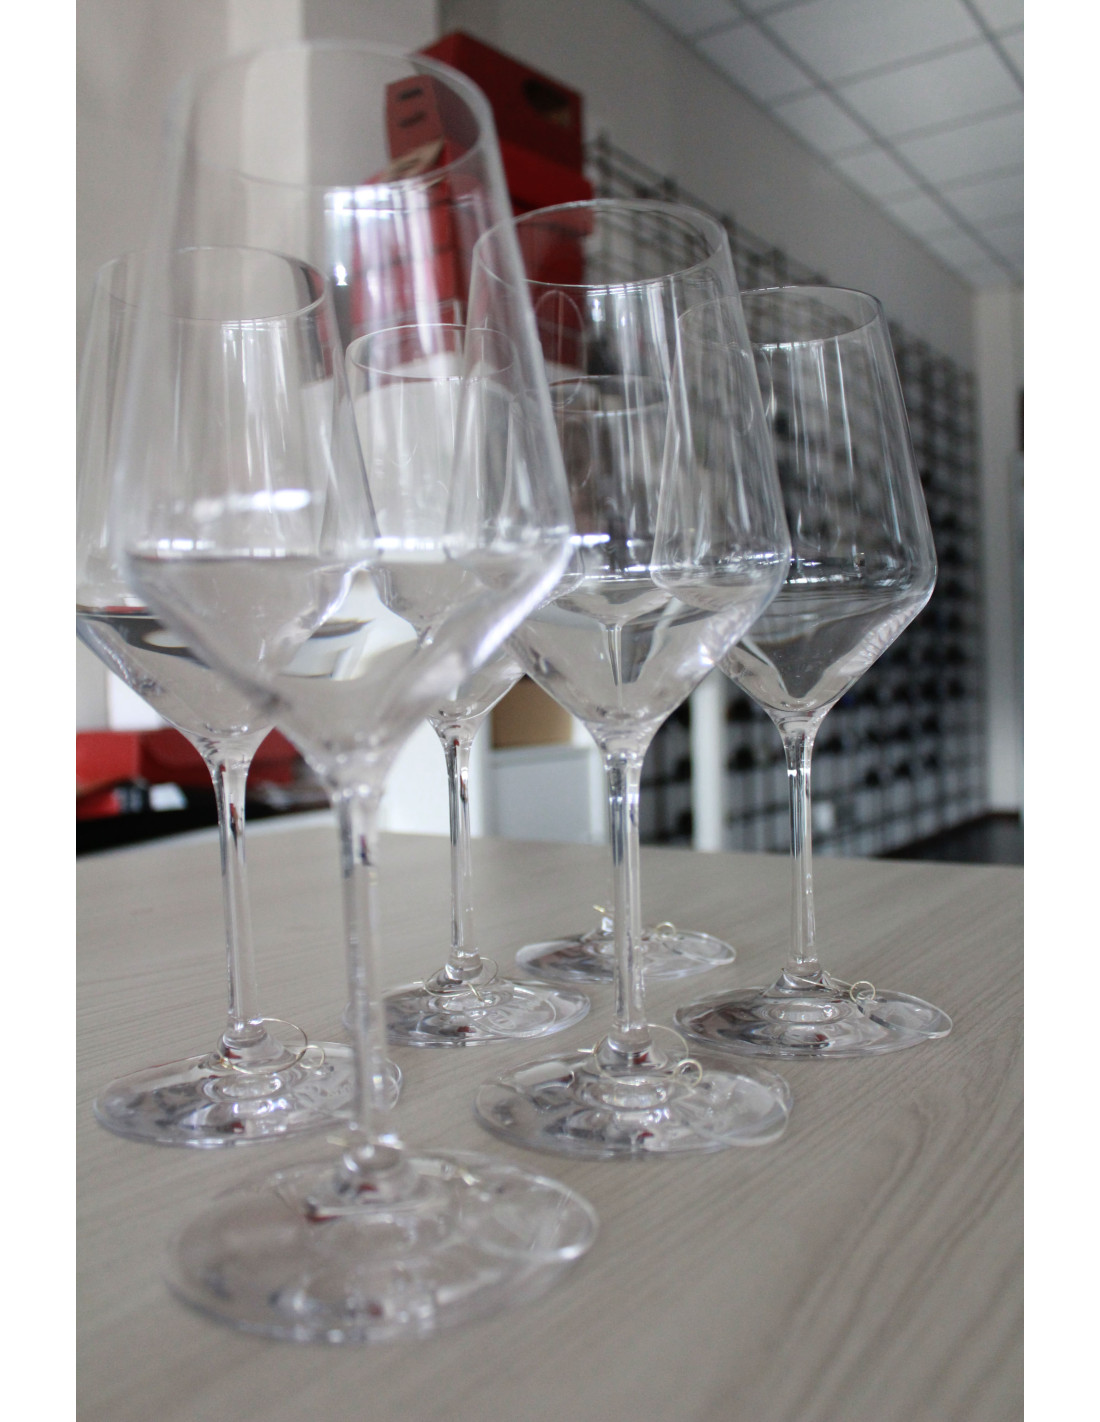 Segna coppa di vino (calice) personalizzato a tema